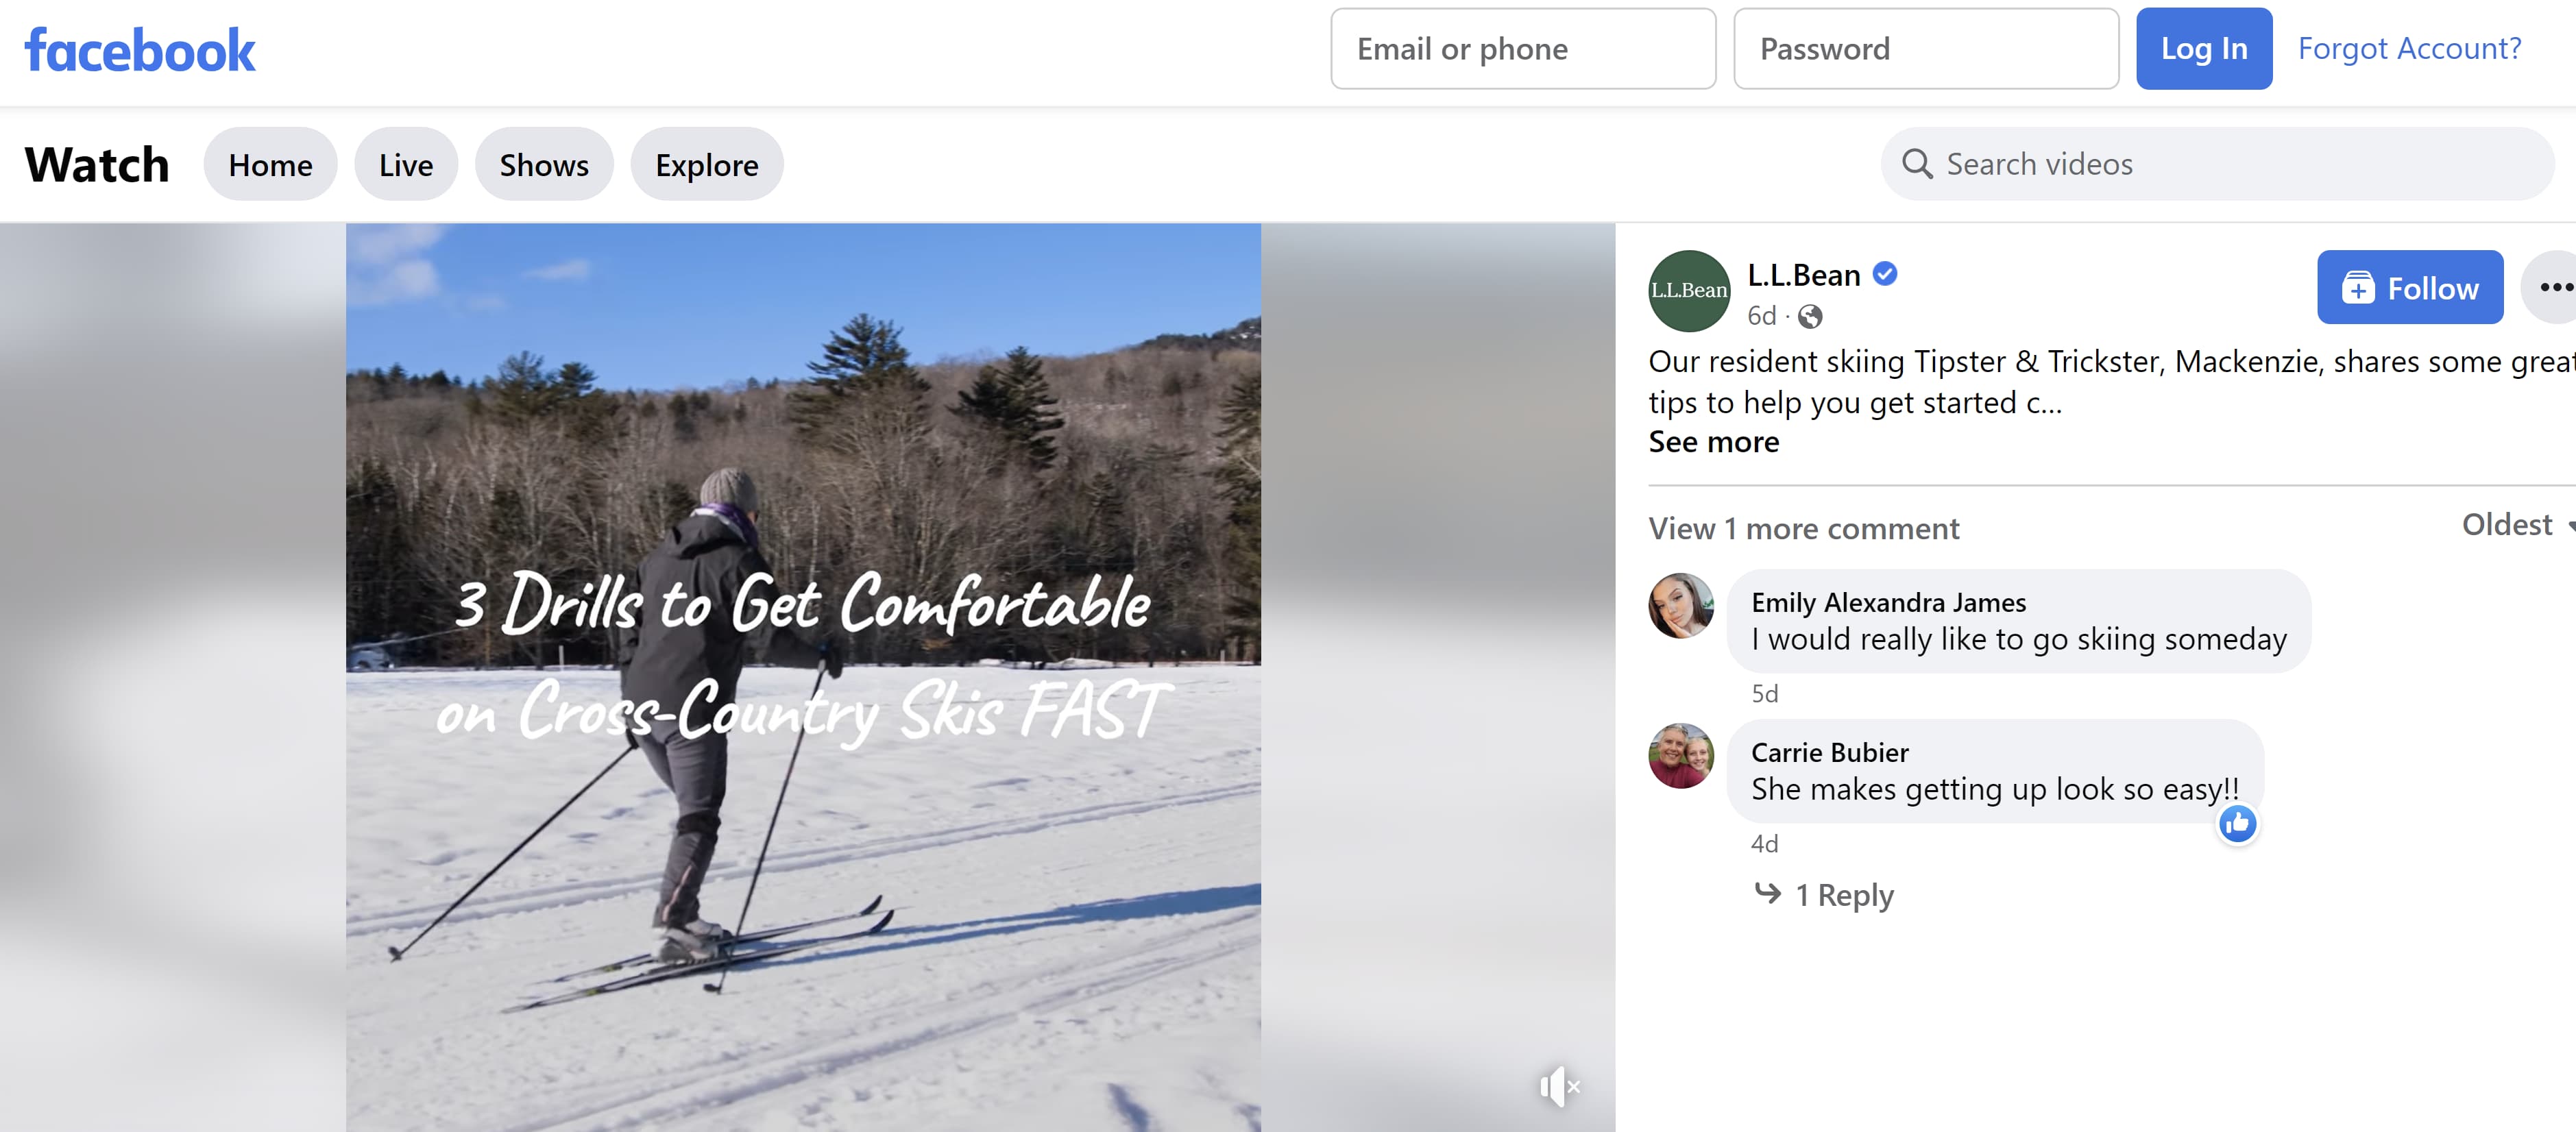 یک ویدیوی آموزشی درباره اسکی باعث افزایش تعامل فیس بوک برای LL Bean می شود.